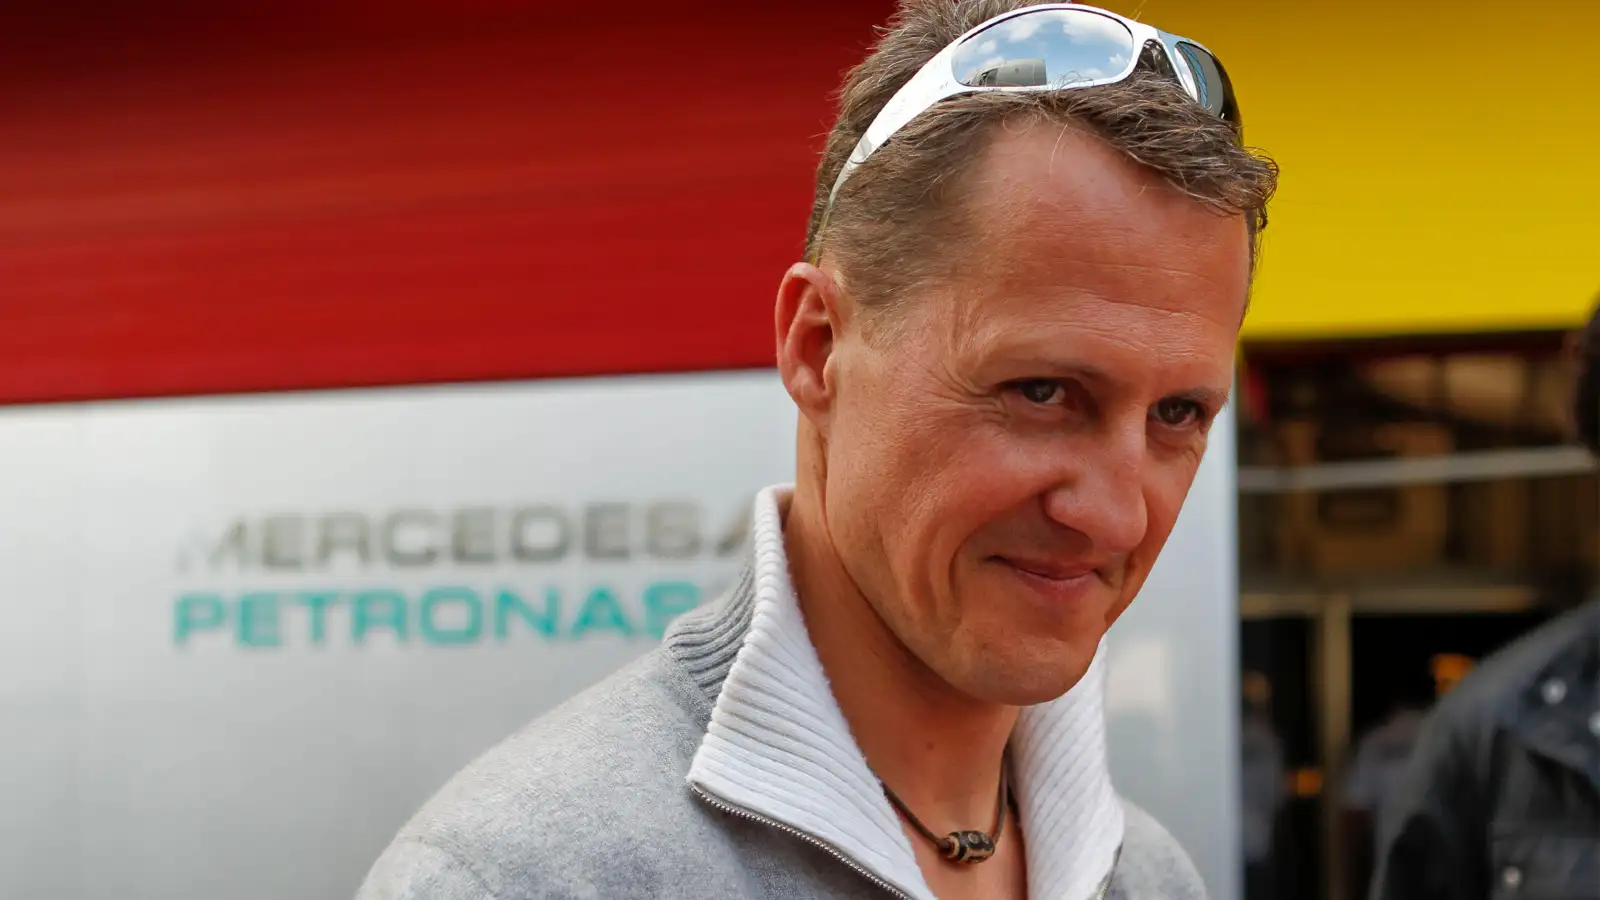 Michael Schumacher, pictured in 2012.